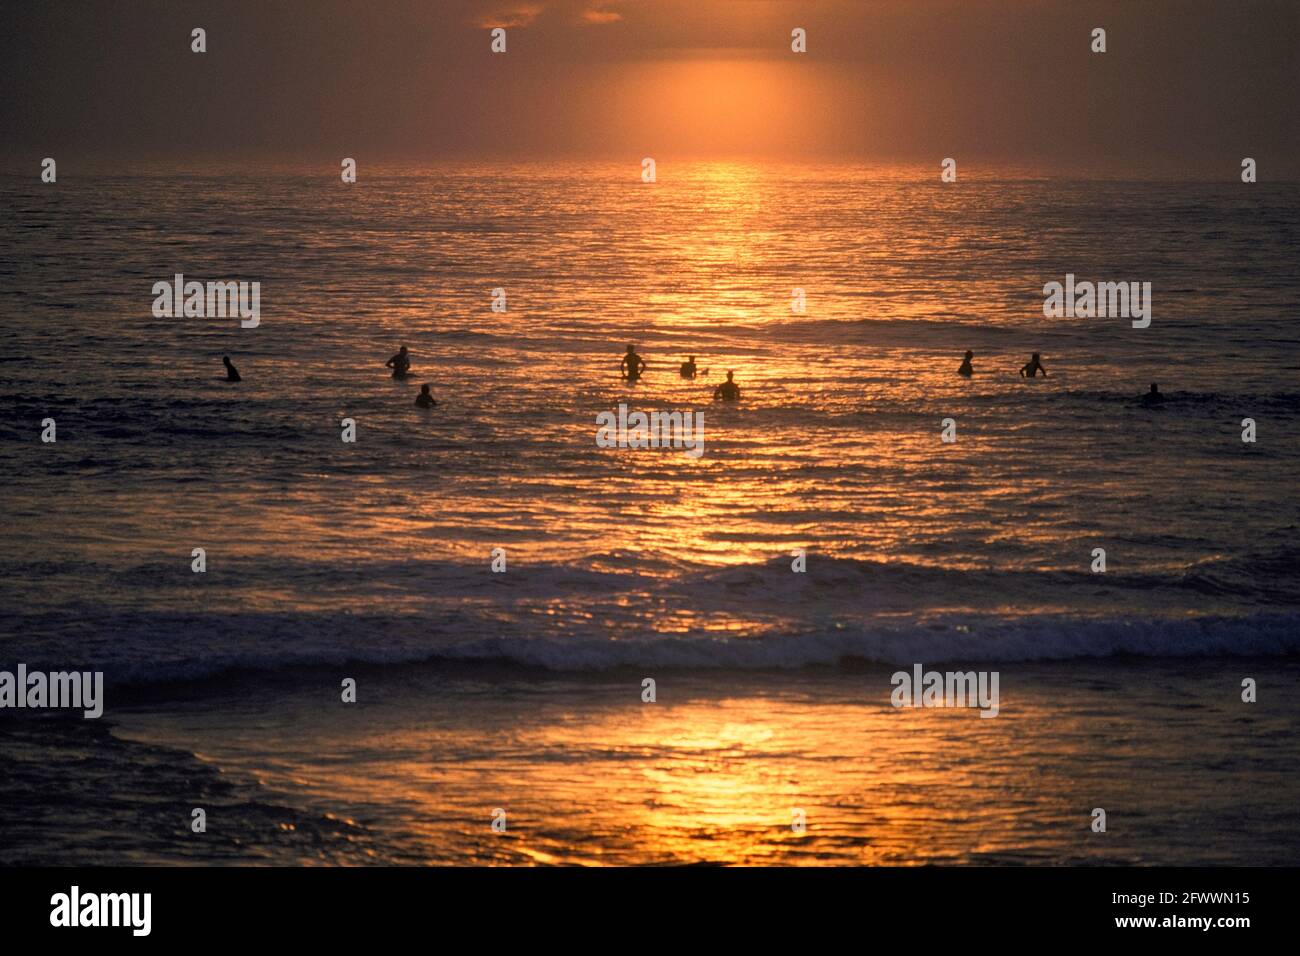 Hopeful Surfers At Sunset Stock Photo